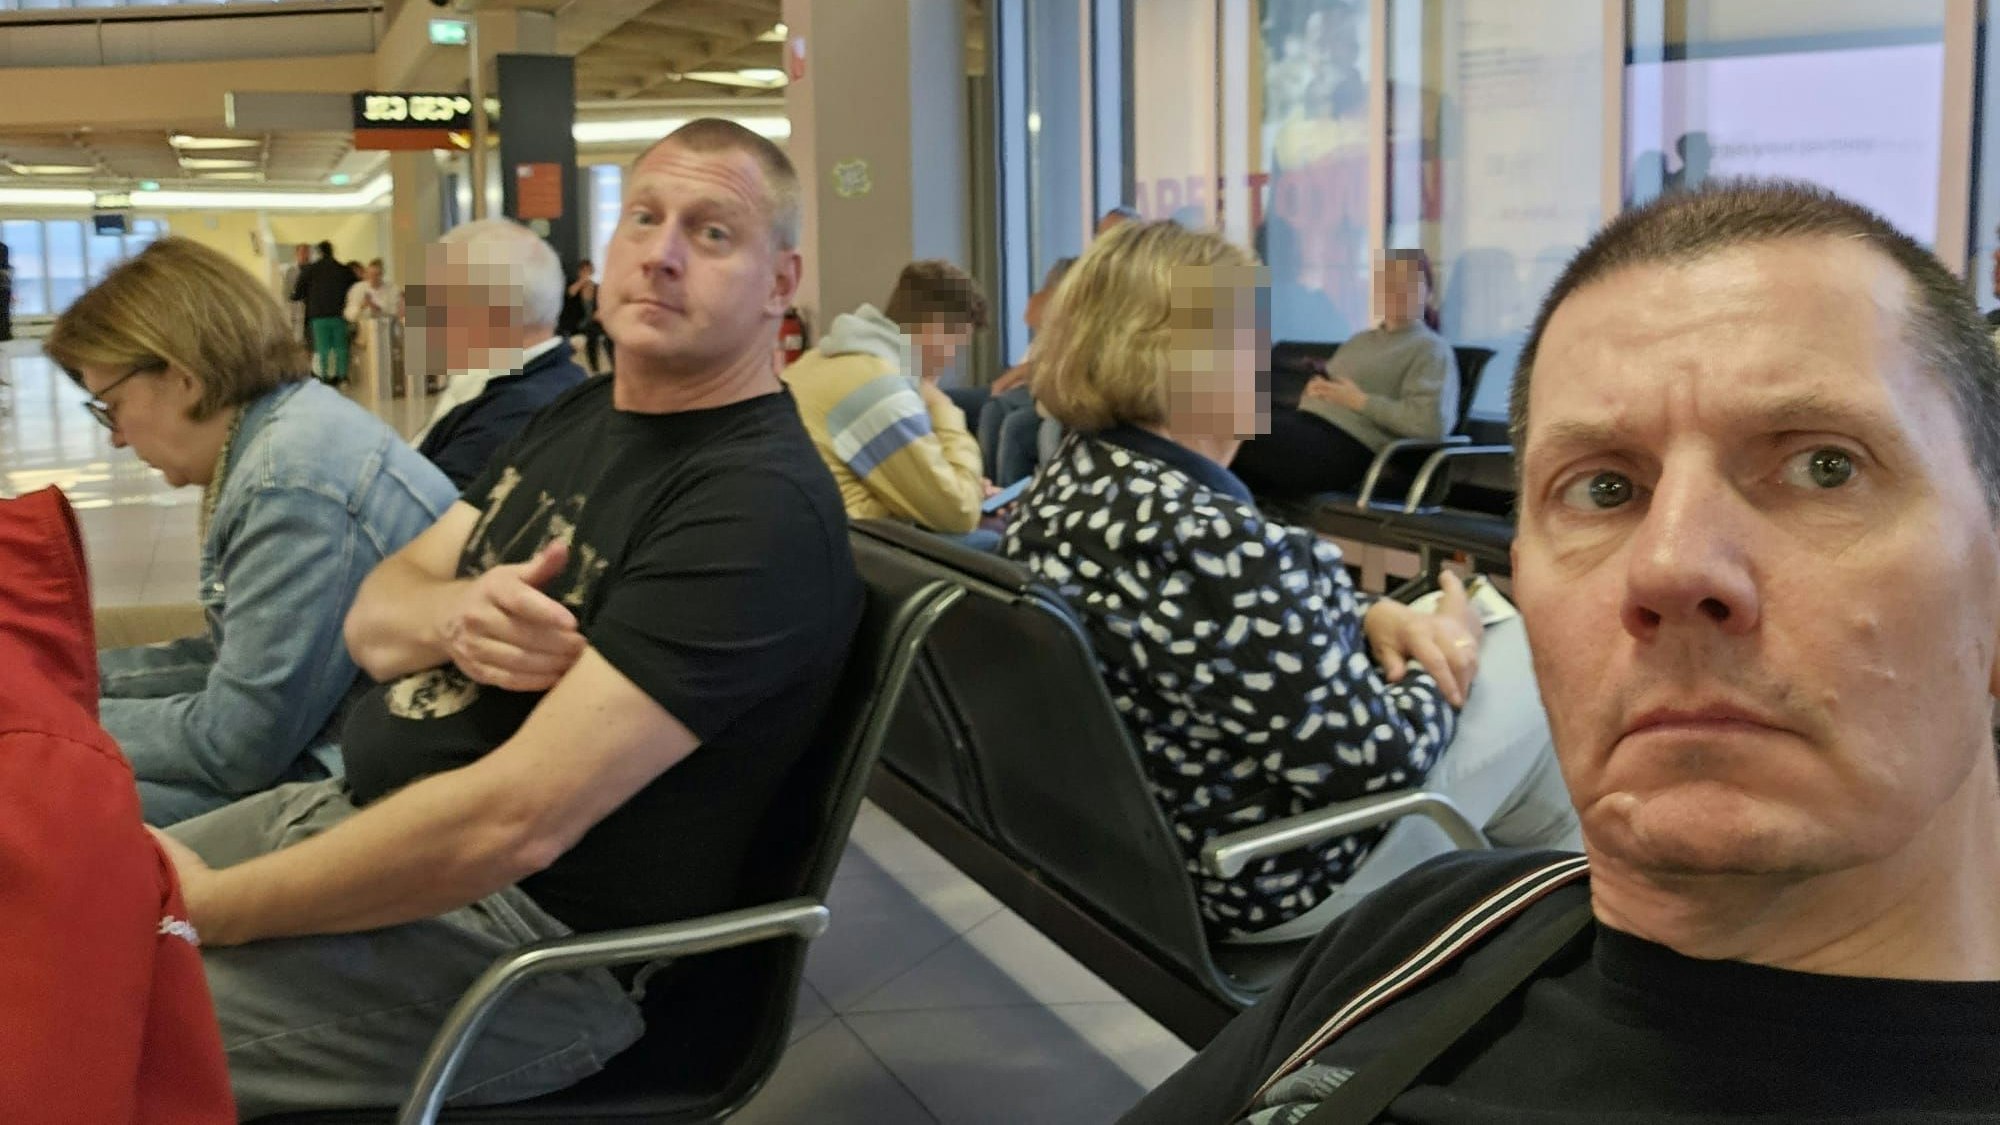 Sascha S. (Mitte), seine Lebensgefährtin Andrea (li.) und Freund Karsten (re.) am Flughafen Köln/Bonn.